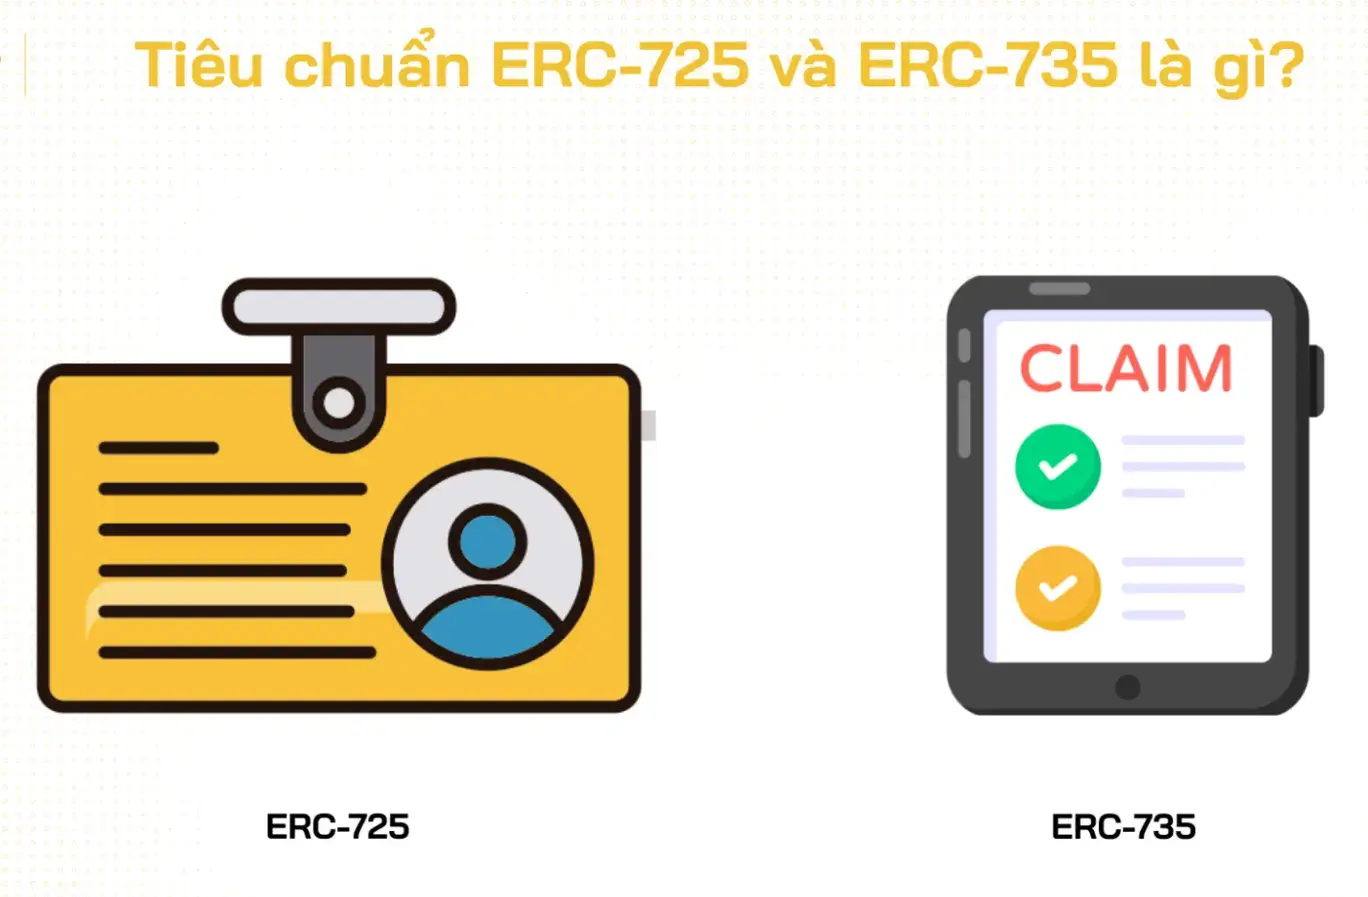 ERC-735 là gì? ERC-725 là gì? Tiêu chuẩn phục vụ Identity